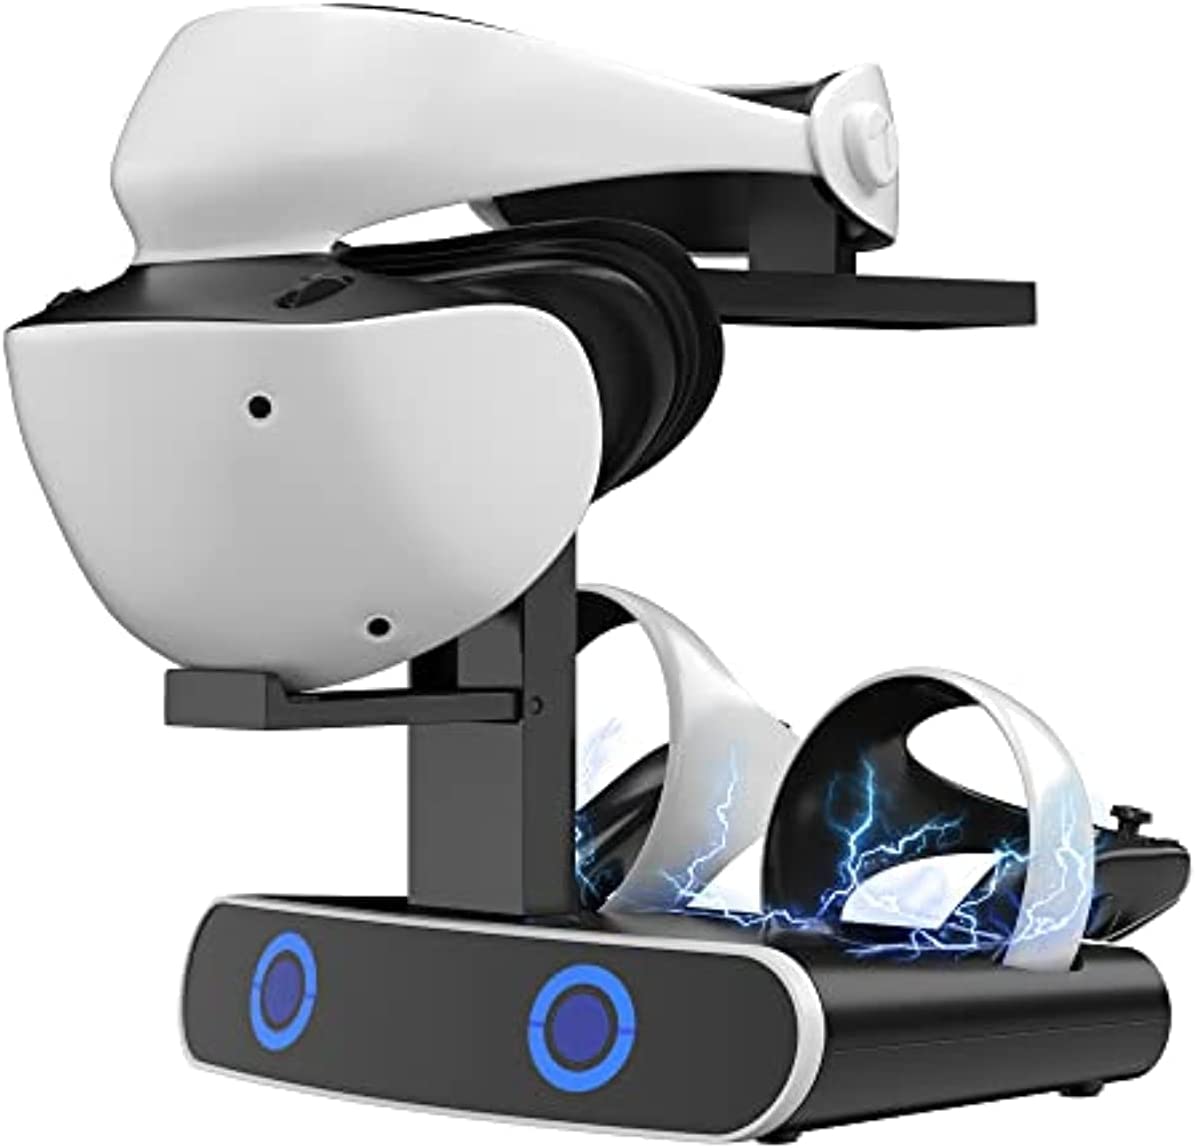 Base de carregamento do controlador TwiHill PlayStation VR2, estação de carregamento com adaptador tipo C, suporte de carregamento duplo do controlador PS VR2, acessórios PS5 com suporte para fone de ouvido, indicador LED-para PS VR2